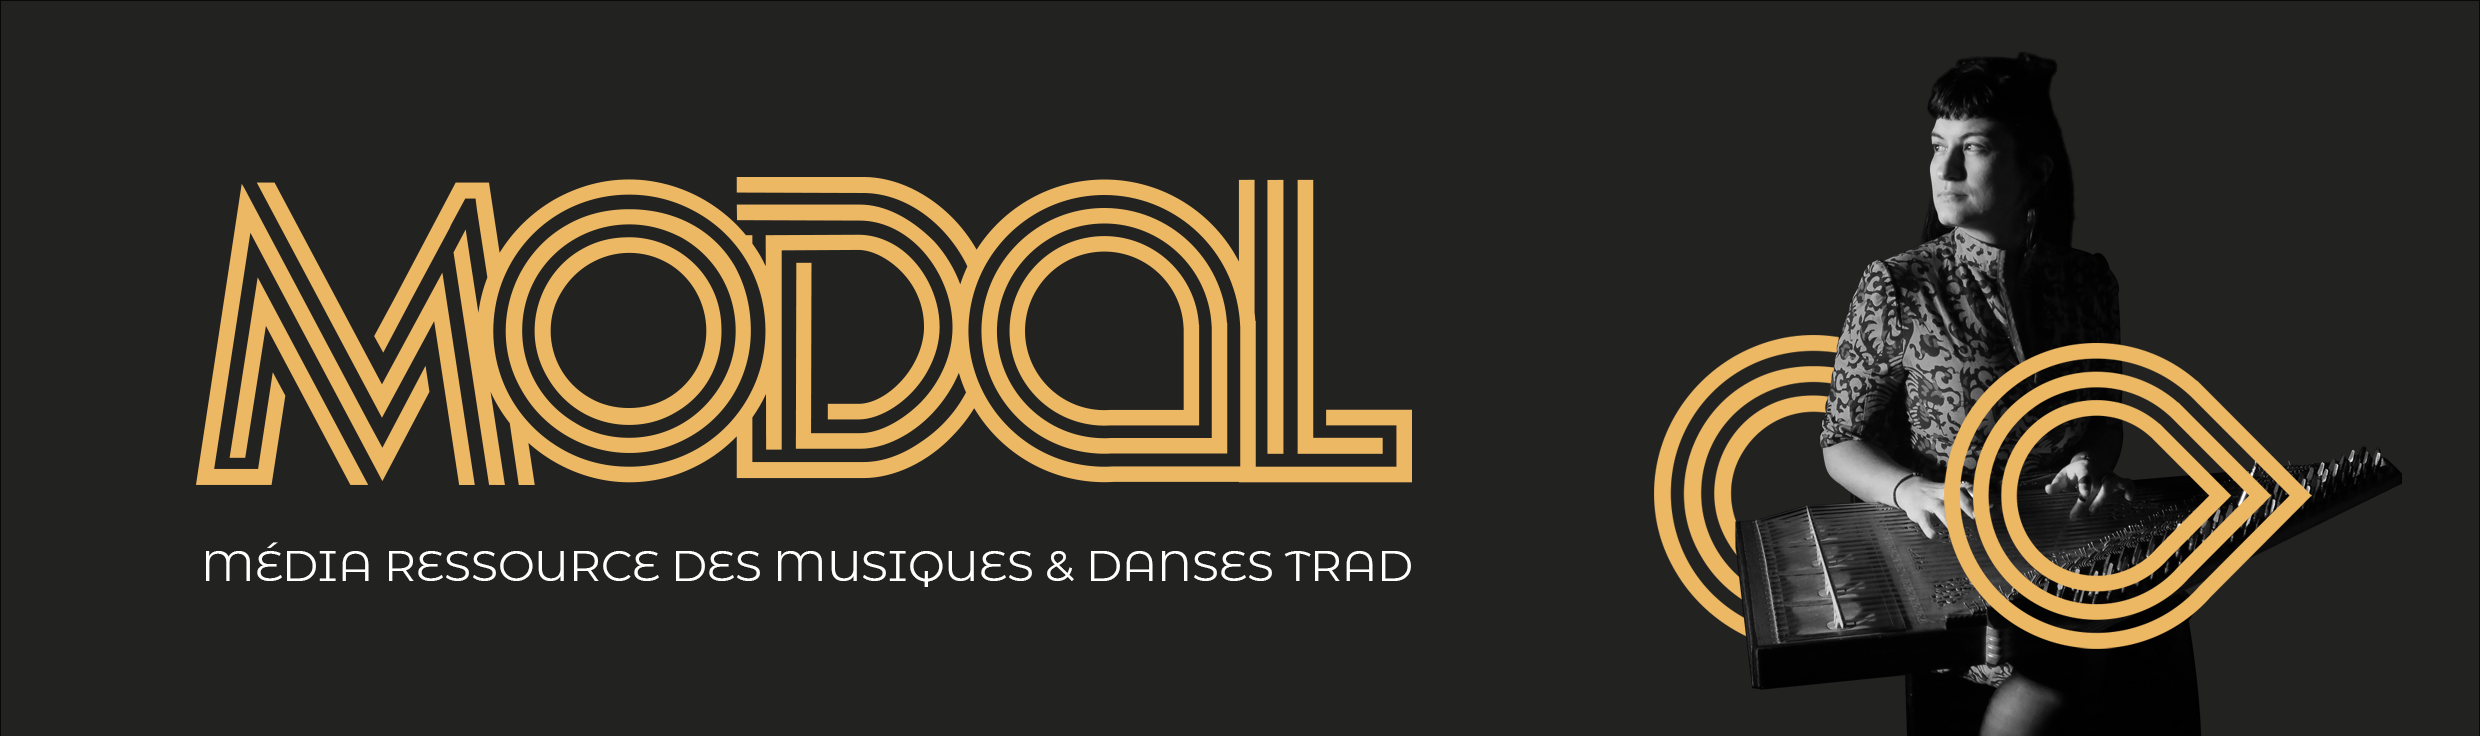 You are currently viewing MODAL : les musiques et danses trad à l’honneur grâce à un nouveau média ressource !